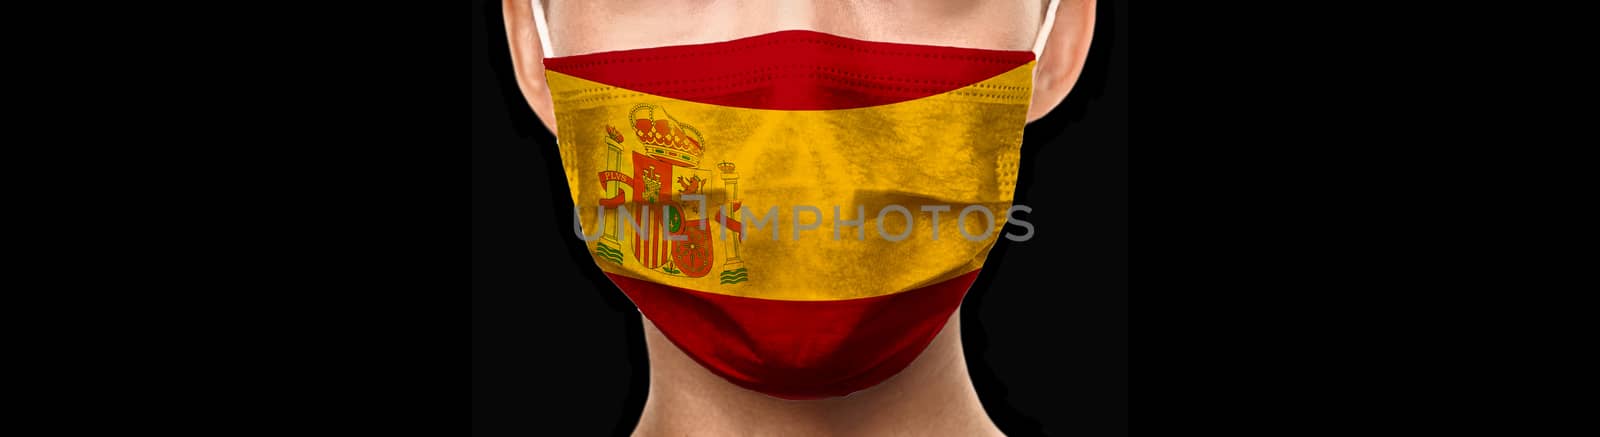 Spain flag doctor mask banner background for COVID-19 Coronavirus concept. Isolated on black by Maridav